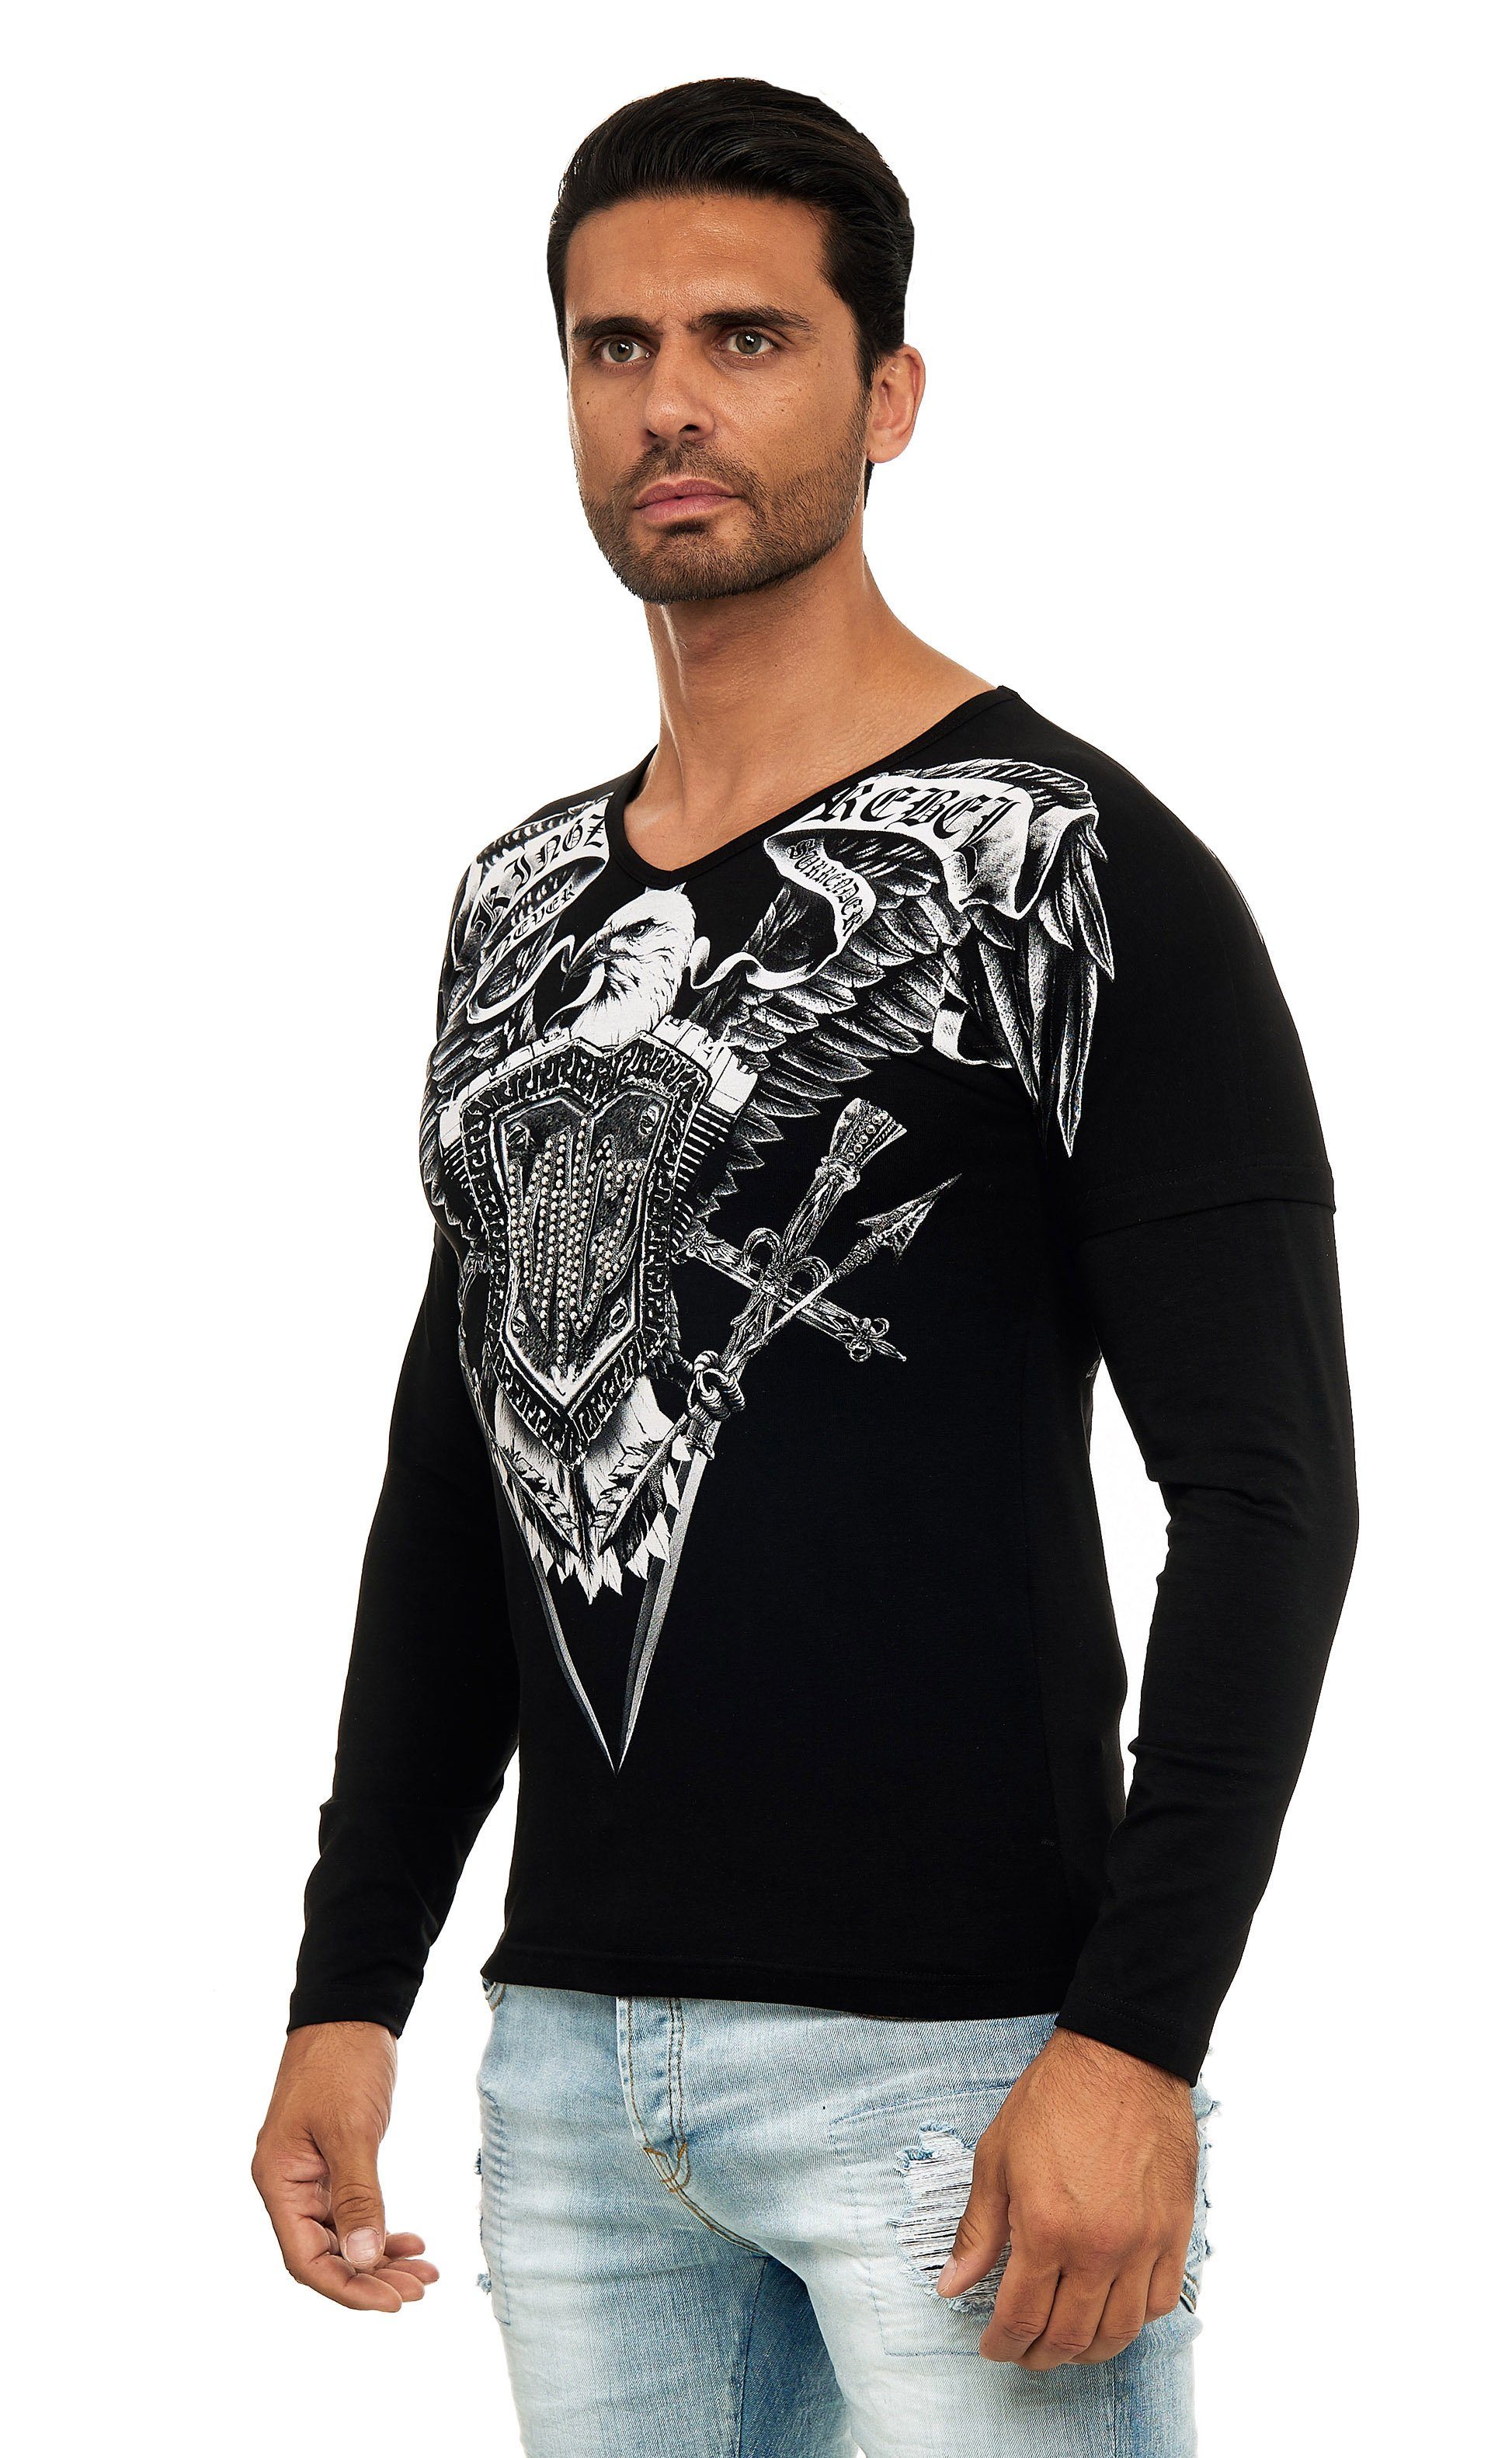 Adler-Motiv mit schwarz-silberfarben Langarmshirt in KINGZ Body-Fit